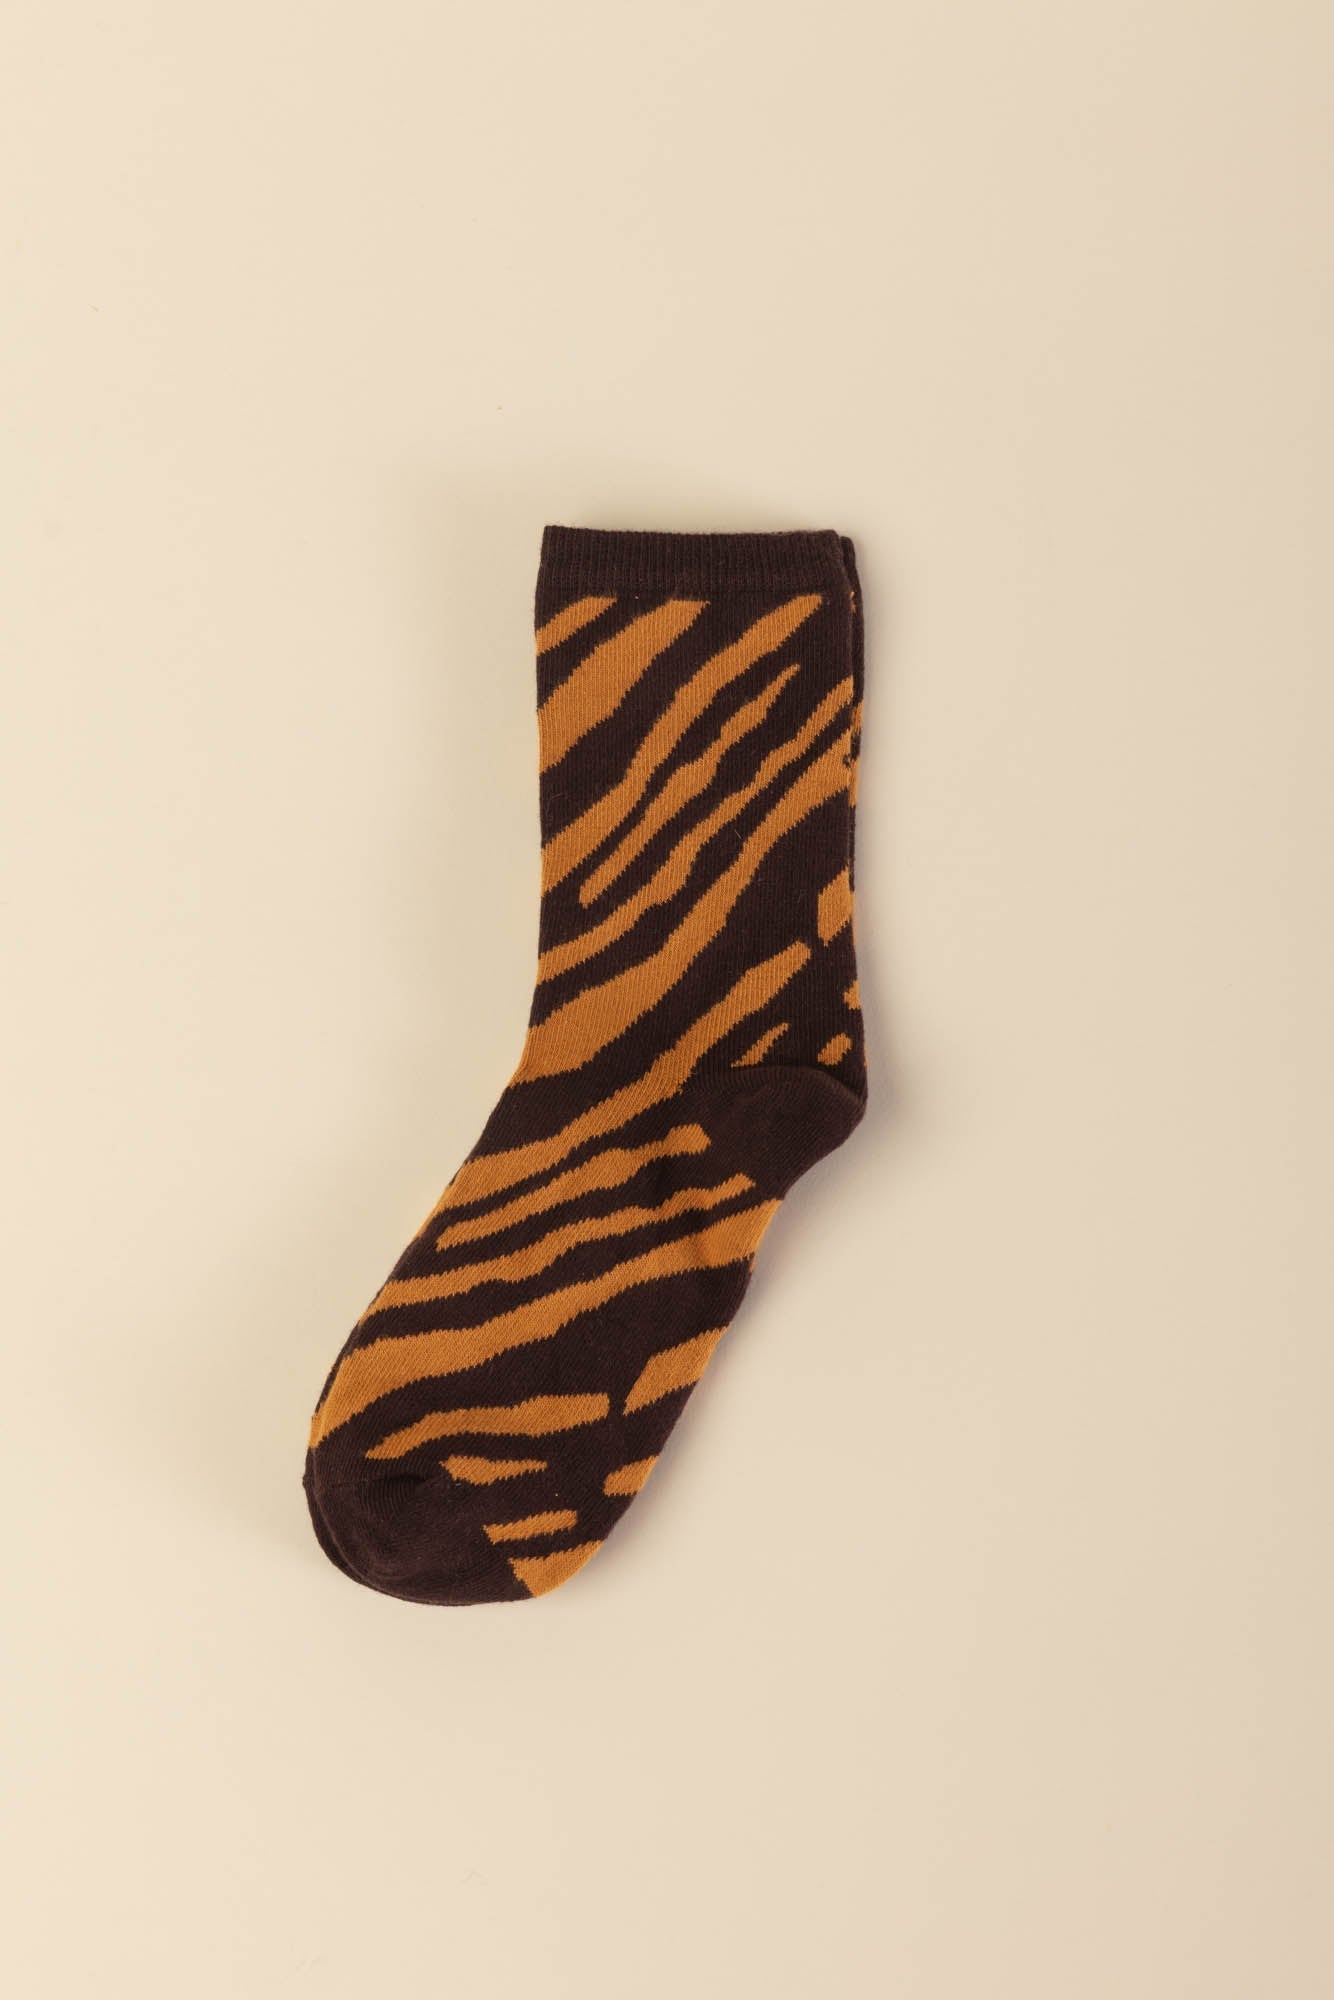 Zebra maple socks